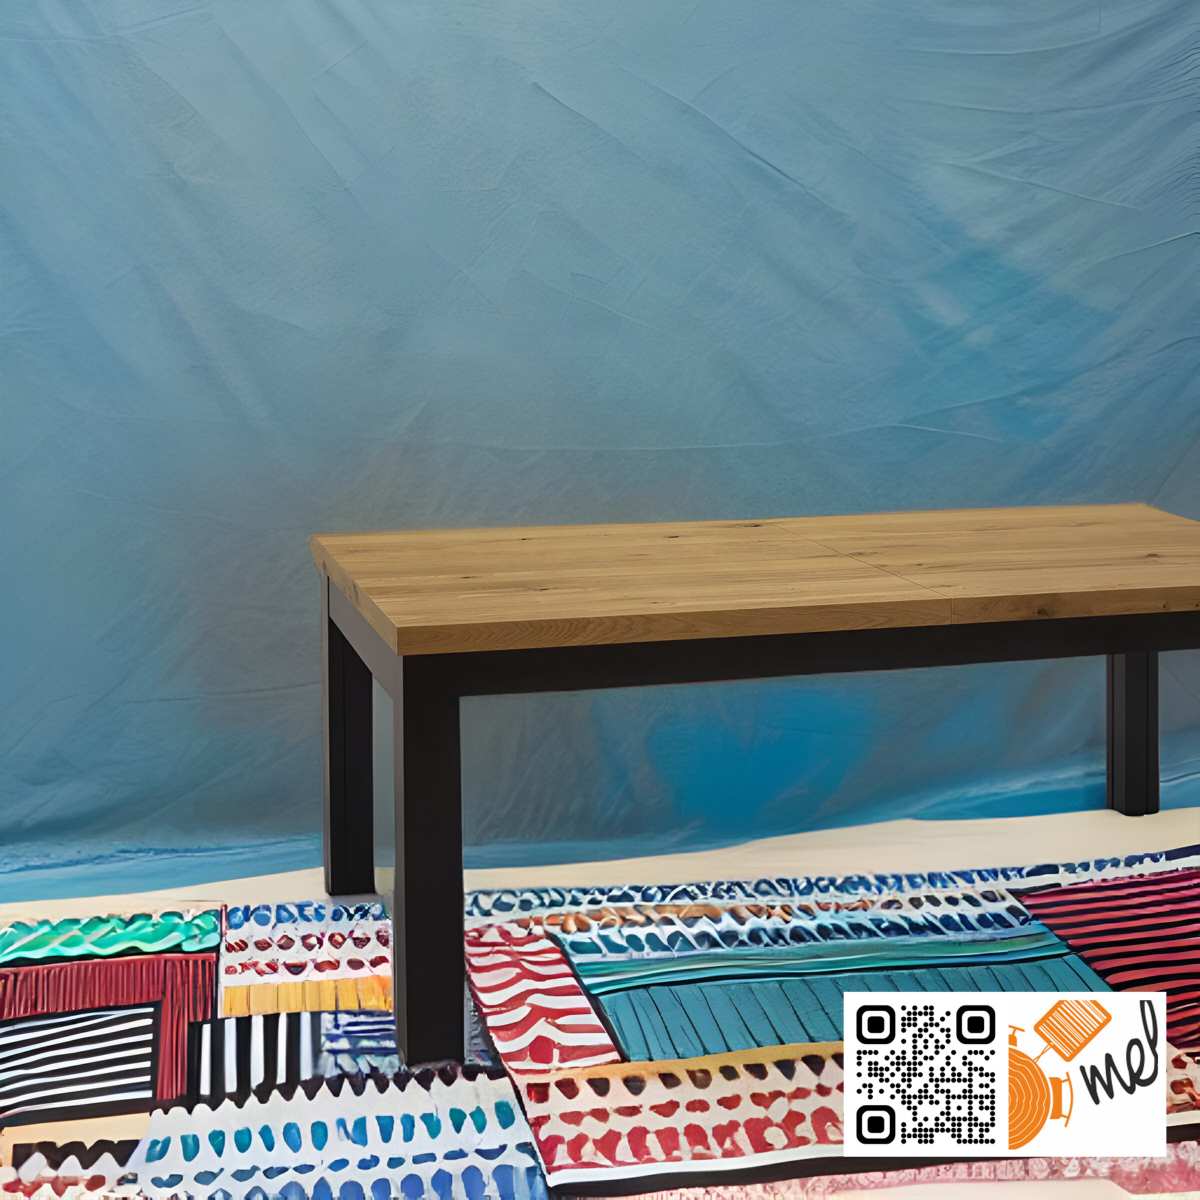 Drewniany Stół Z Ośmioma Nogami - Wyjątkowy Mebel